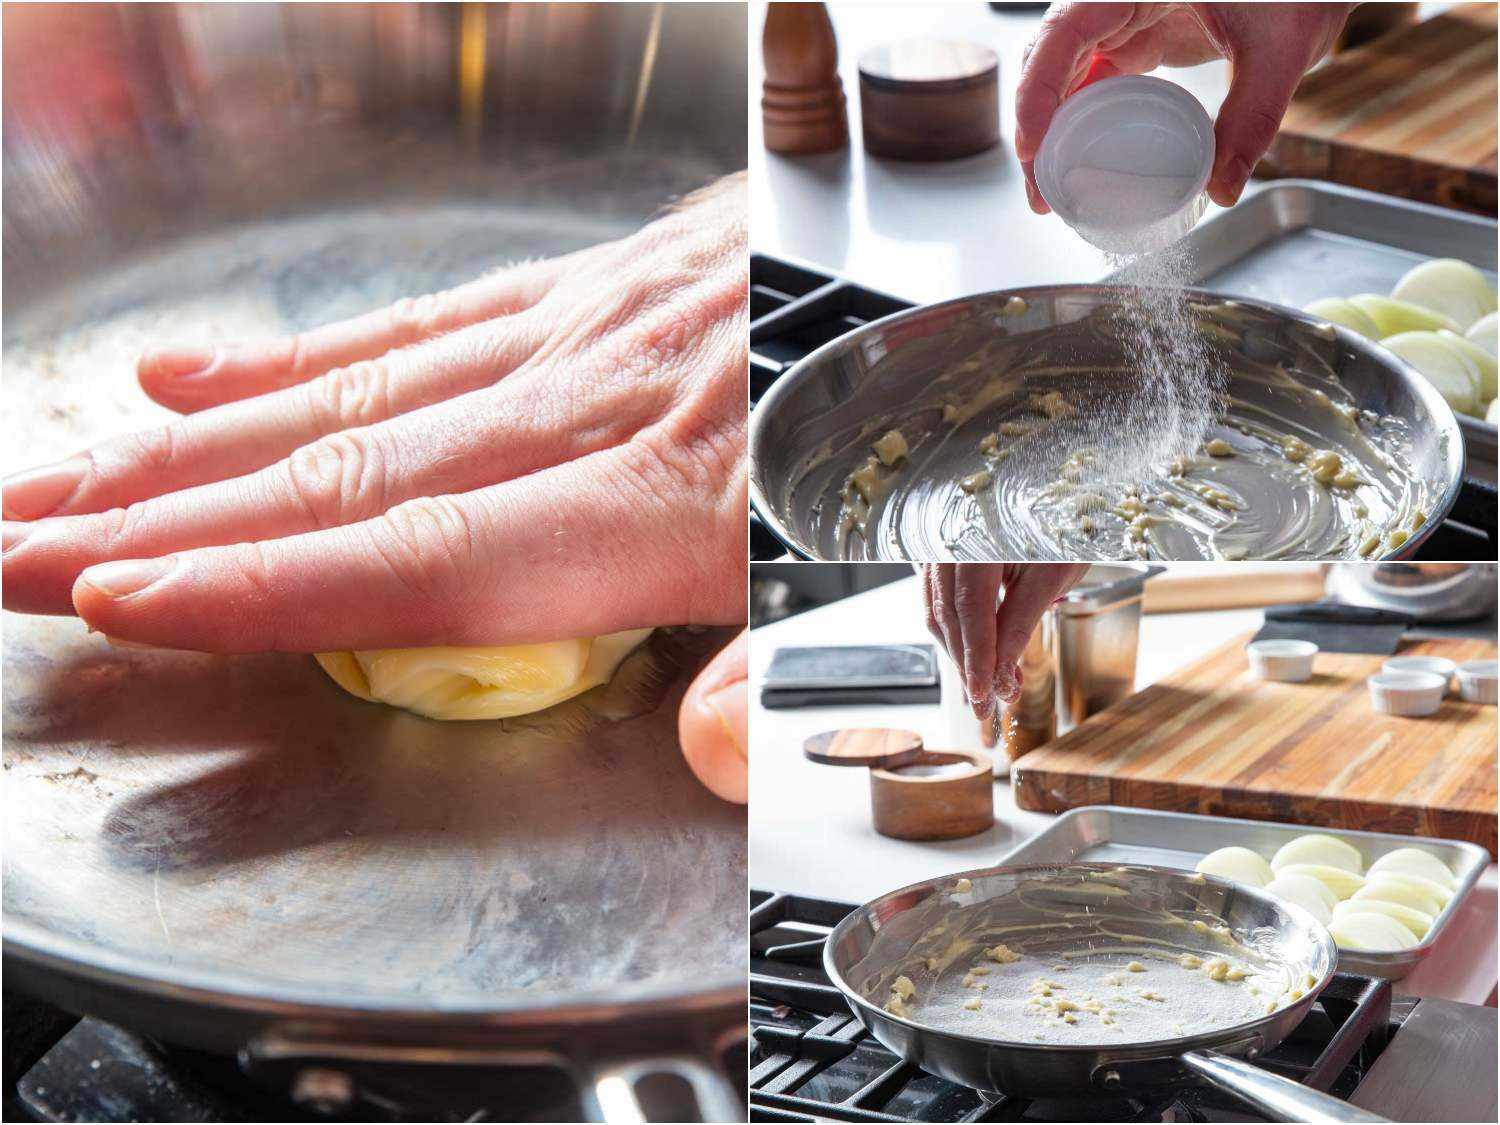 拼贴照片显示准备煎锅洋葱楔涂抹黄油，撒上糖和盐。gydF4y2Ba